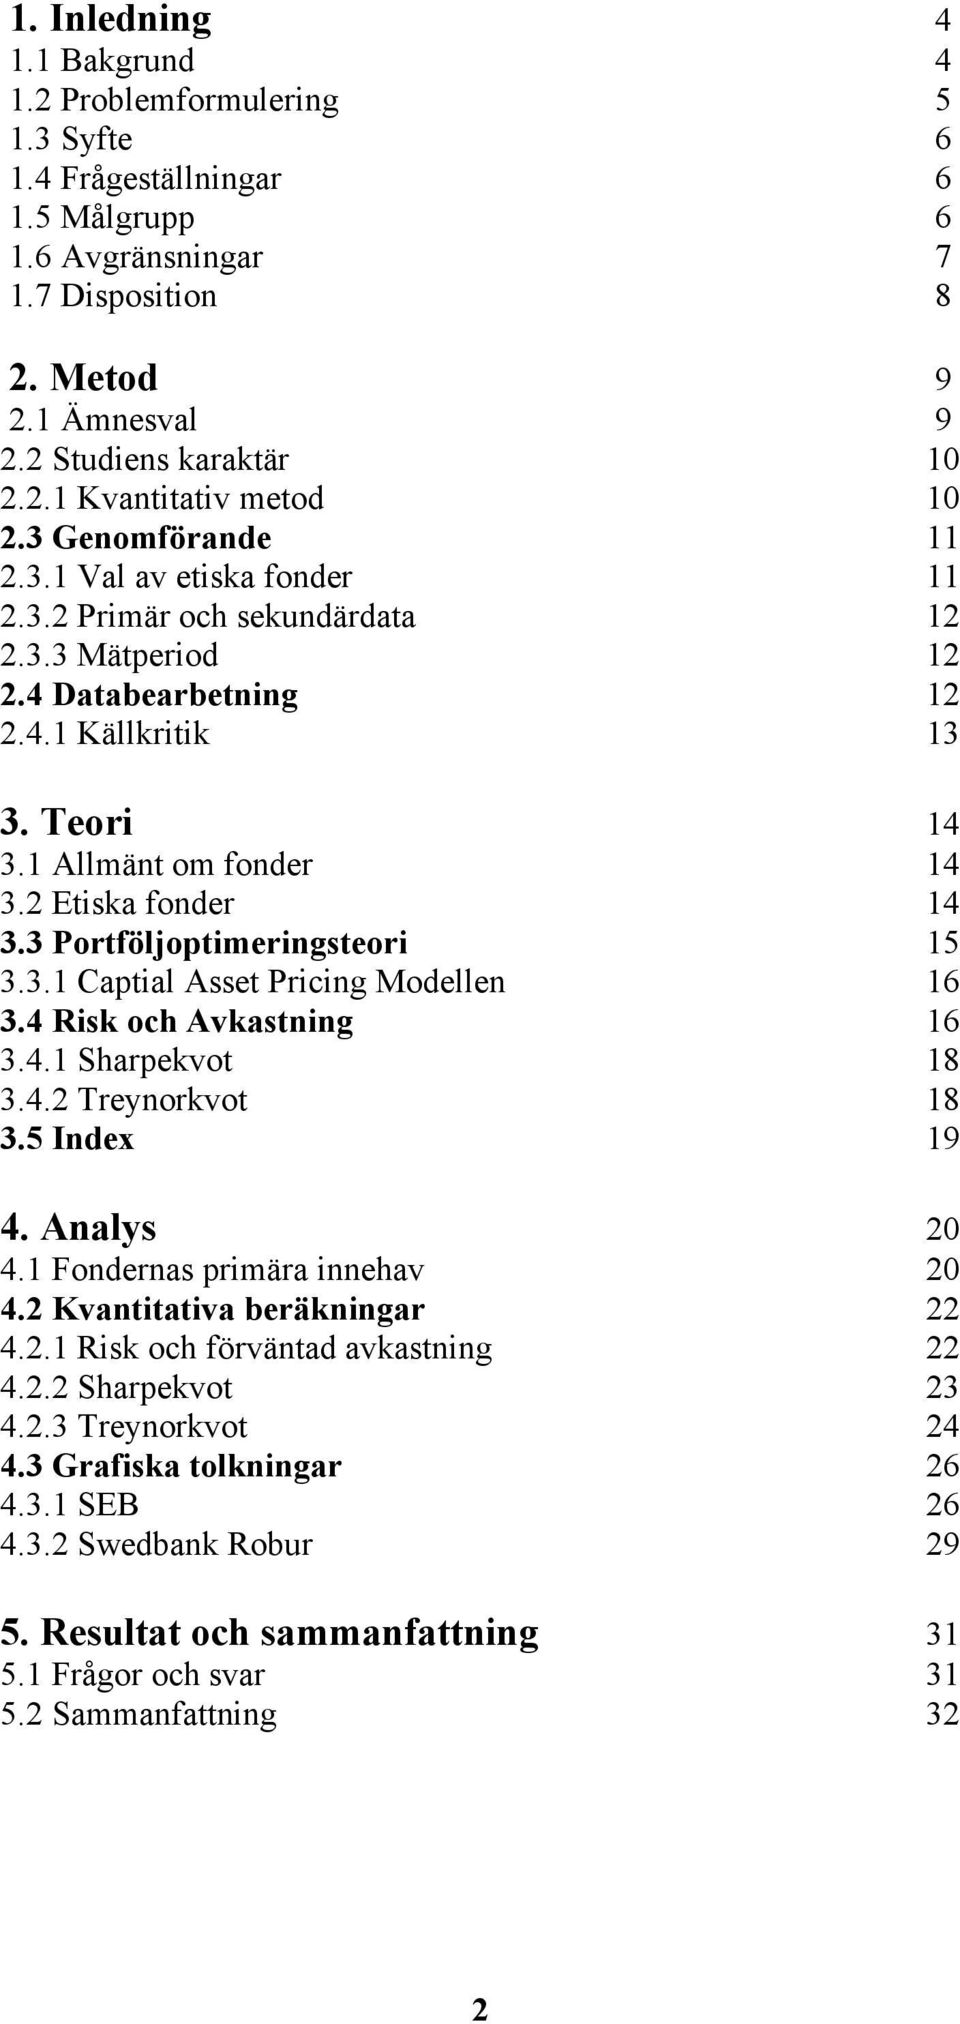 2 Etiska fonder 14 3.3 Portföljoptimeringsteori 15 3.3.1 Captial Asset Pricing Modellen 16 3.4 Risk och Avkastning 16 3.4.1 Sharpekvot 18 3.4.2 Treynorkvot 18 3.5 Index 19 4. Analys 20 4.